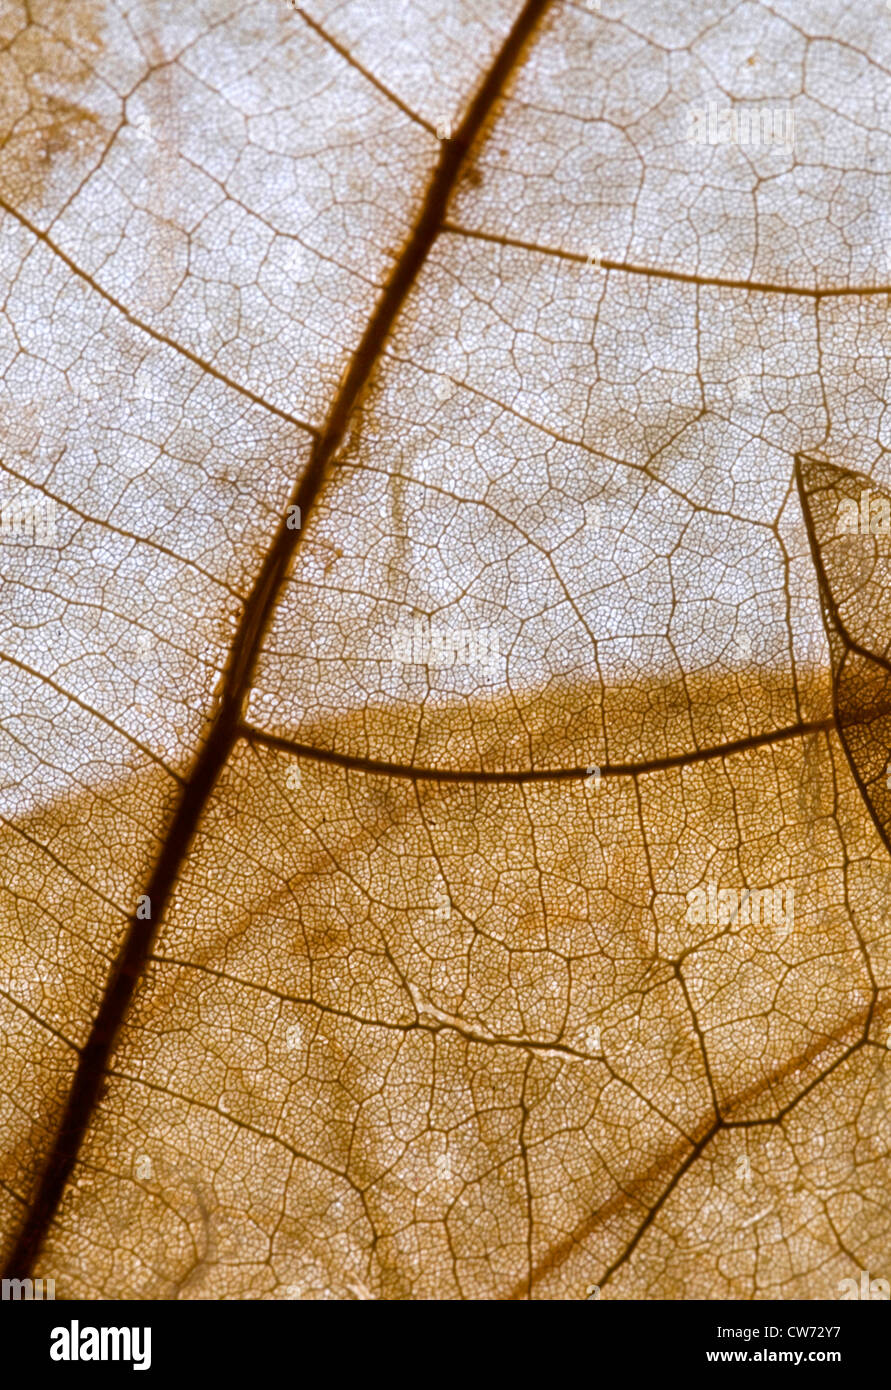 Detalle de una hoja seca con la luz que brilla a través de Foto de stock